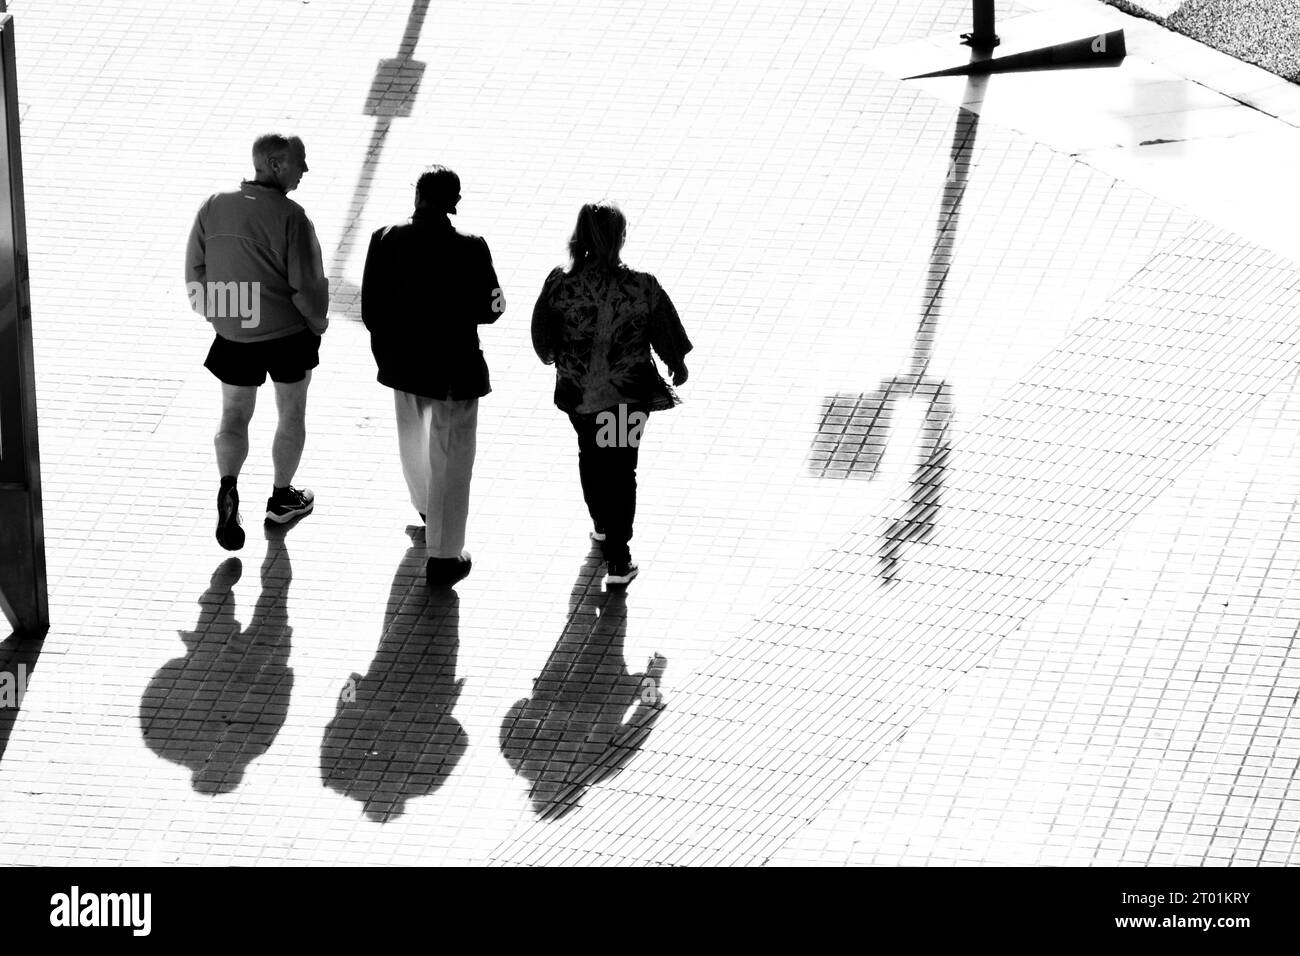 Drei Leute laufen die Straße runter. Das starke Licht hebt ihre Silhouetten und ihre Schatten auf dem Boden hervor. Stockfoto